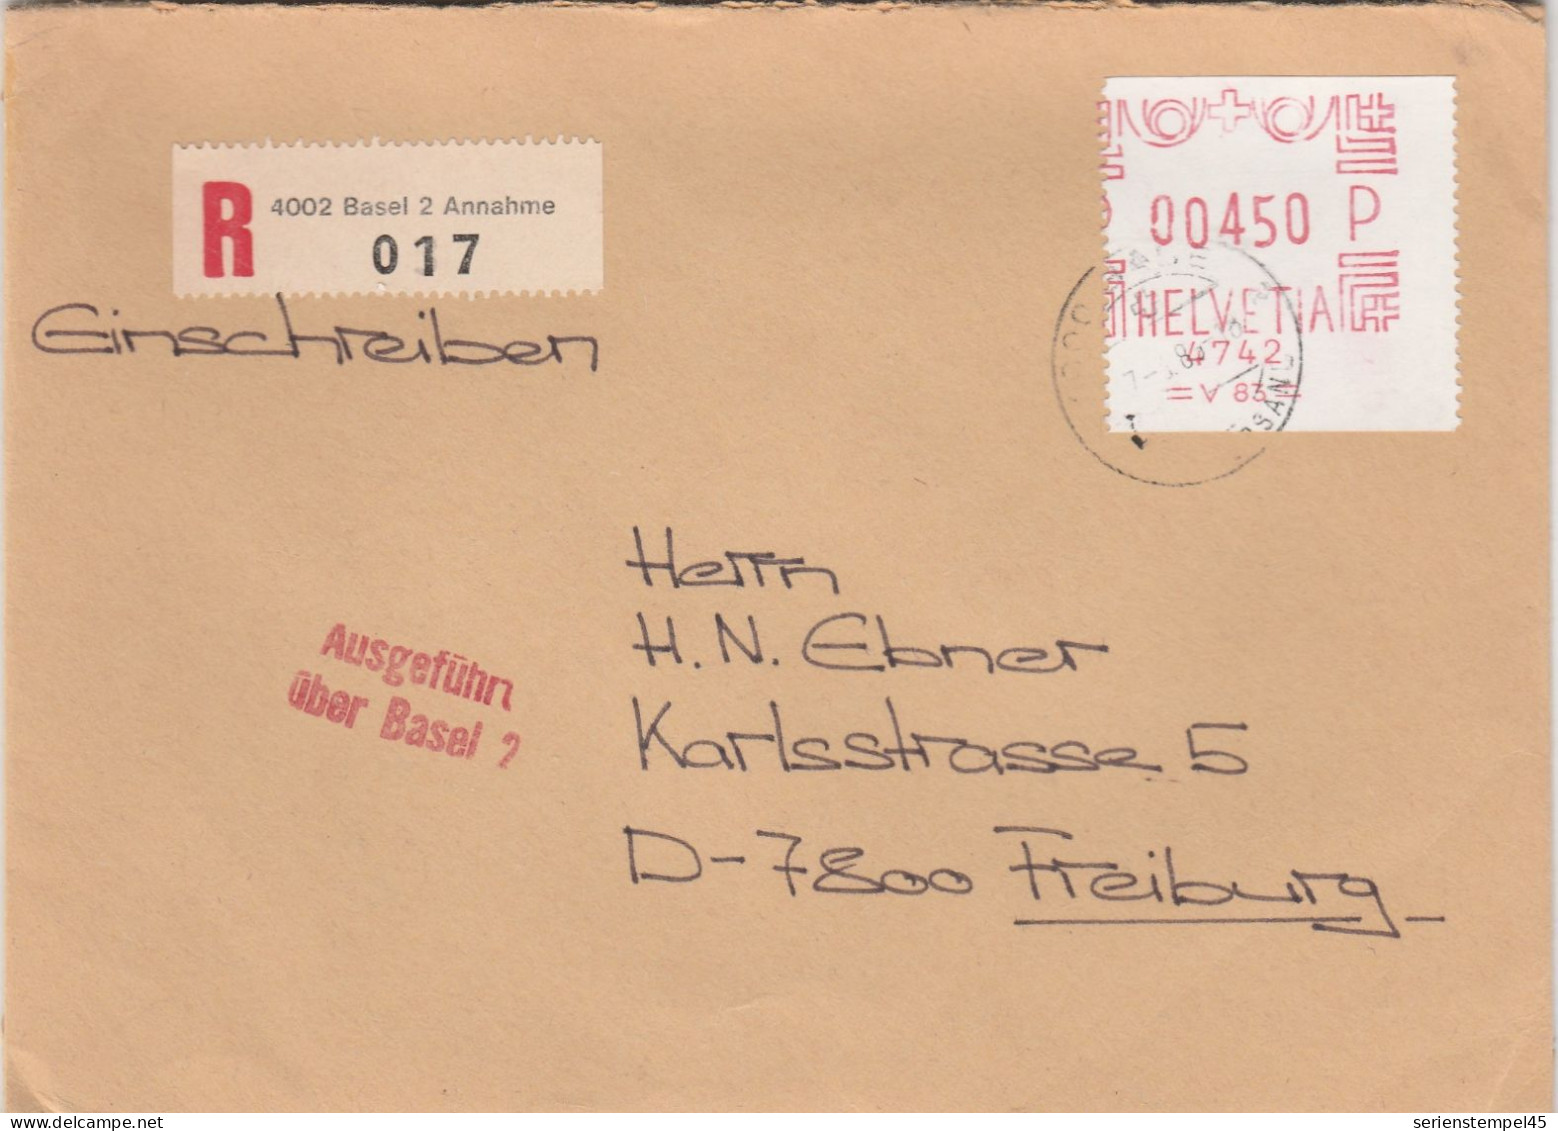 Schweiz Einschreiben Brief 4002 Basel 2 Annahme Mit Freistempel 4742 Porto 450 P 1985 - Frankiermaschinen (FraMA)